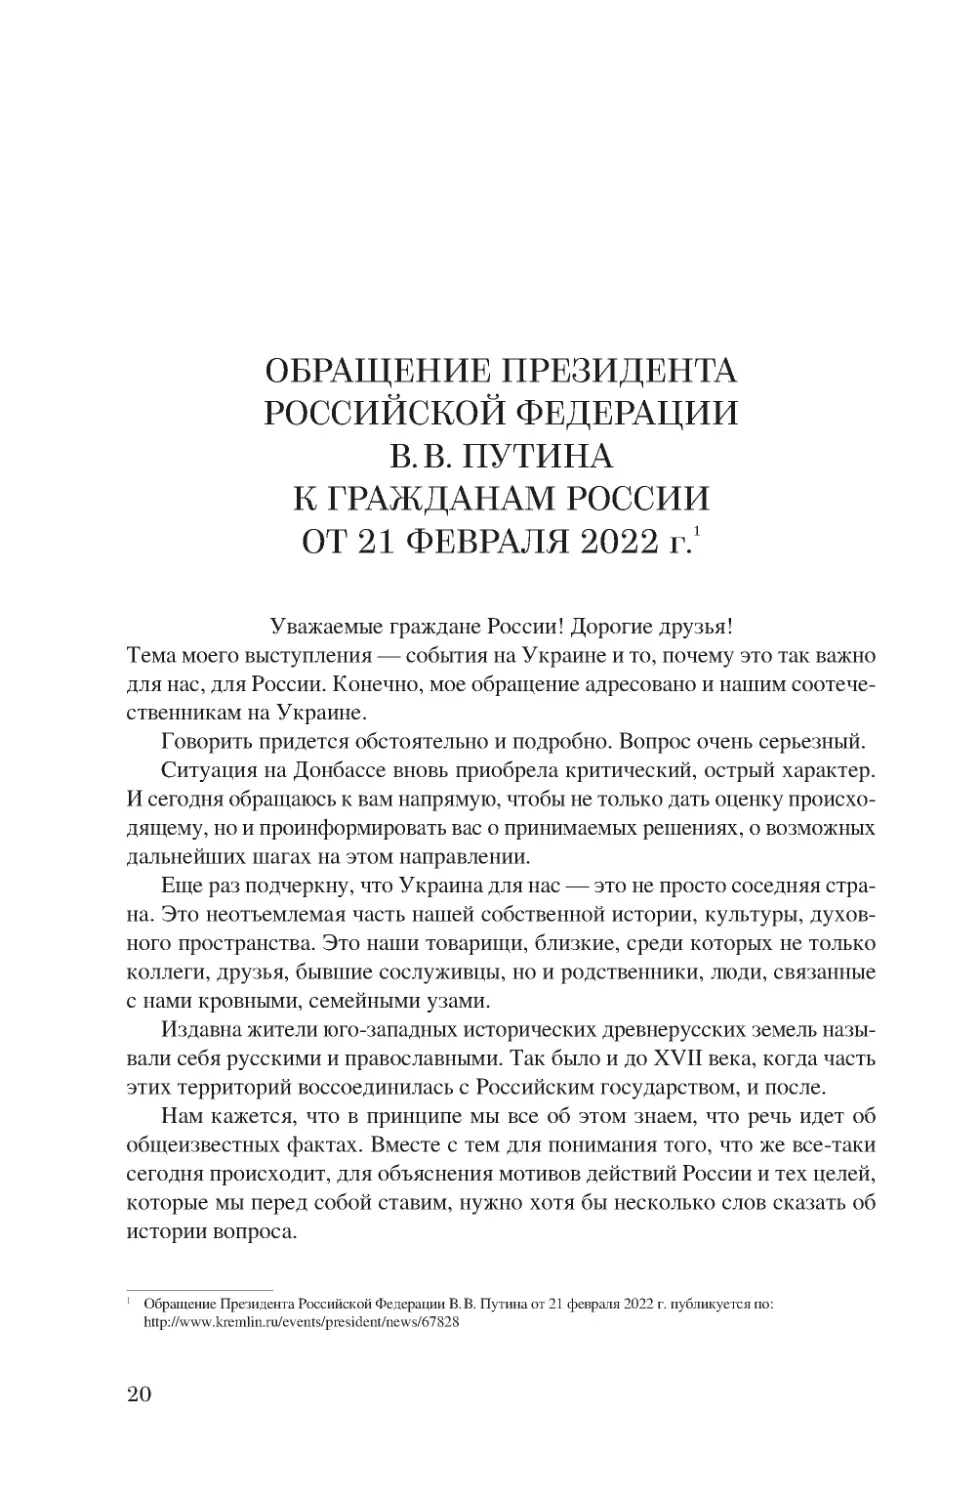 Обращение Президента Российской Федерации В.В. Путина к гражданам России от 21 февраля 2022 г